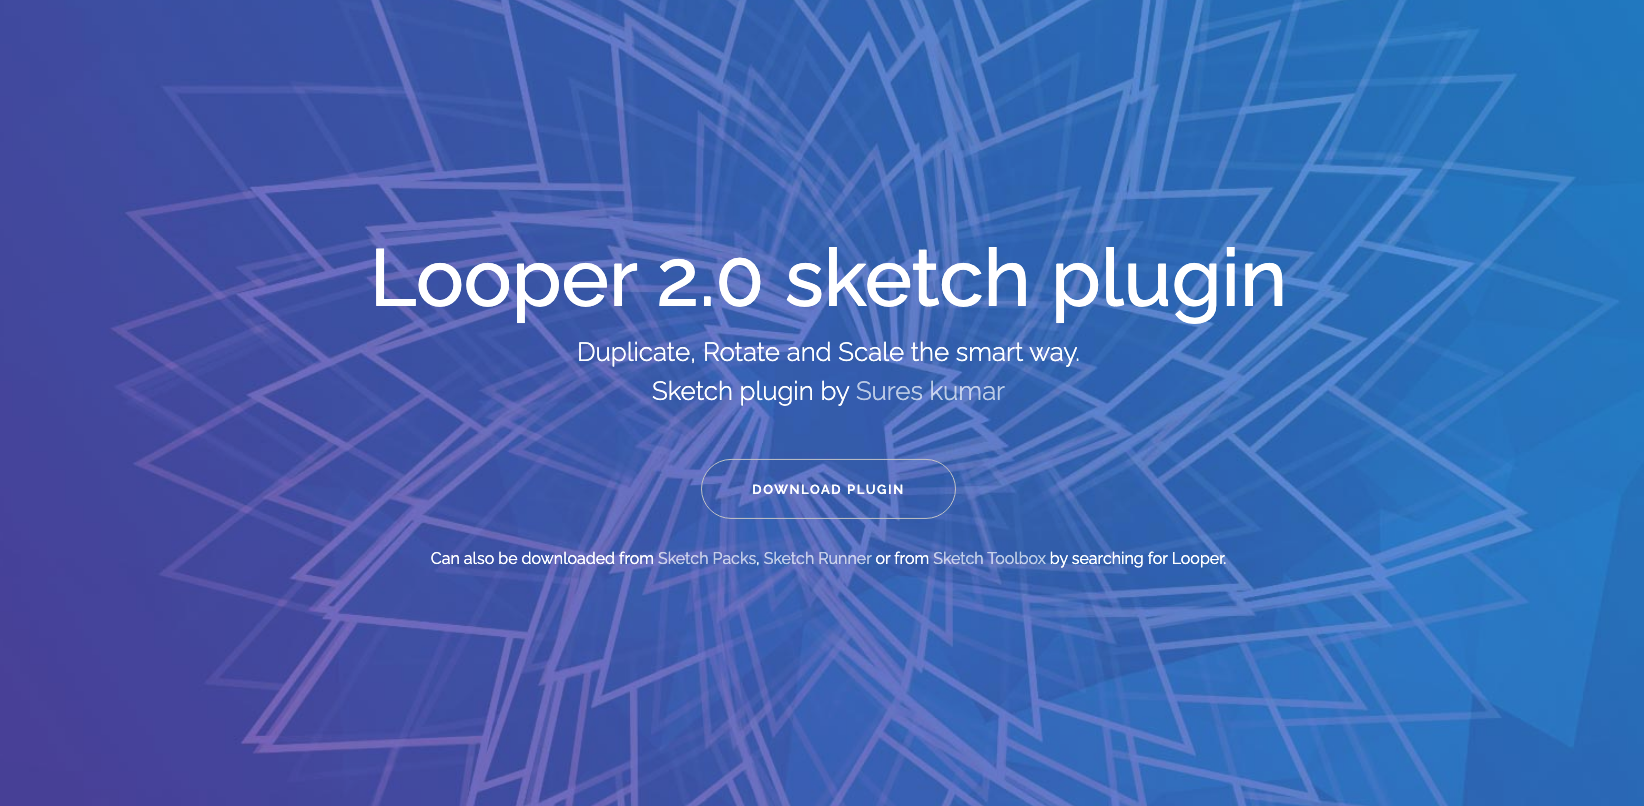 Sketch插件Looper